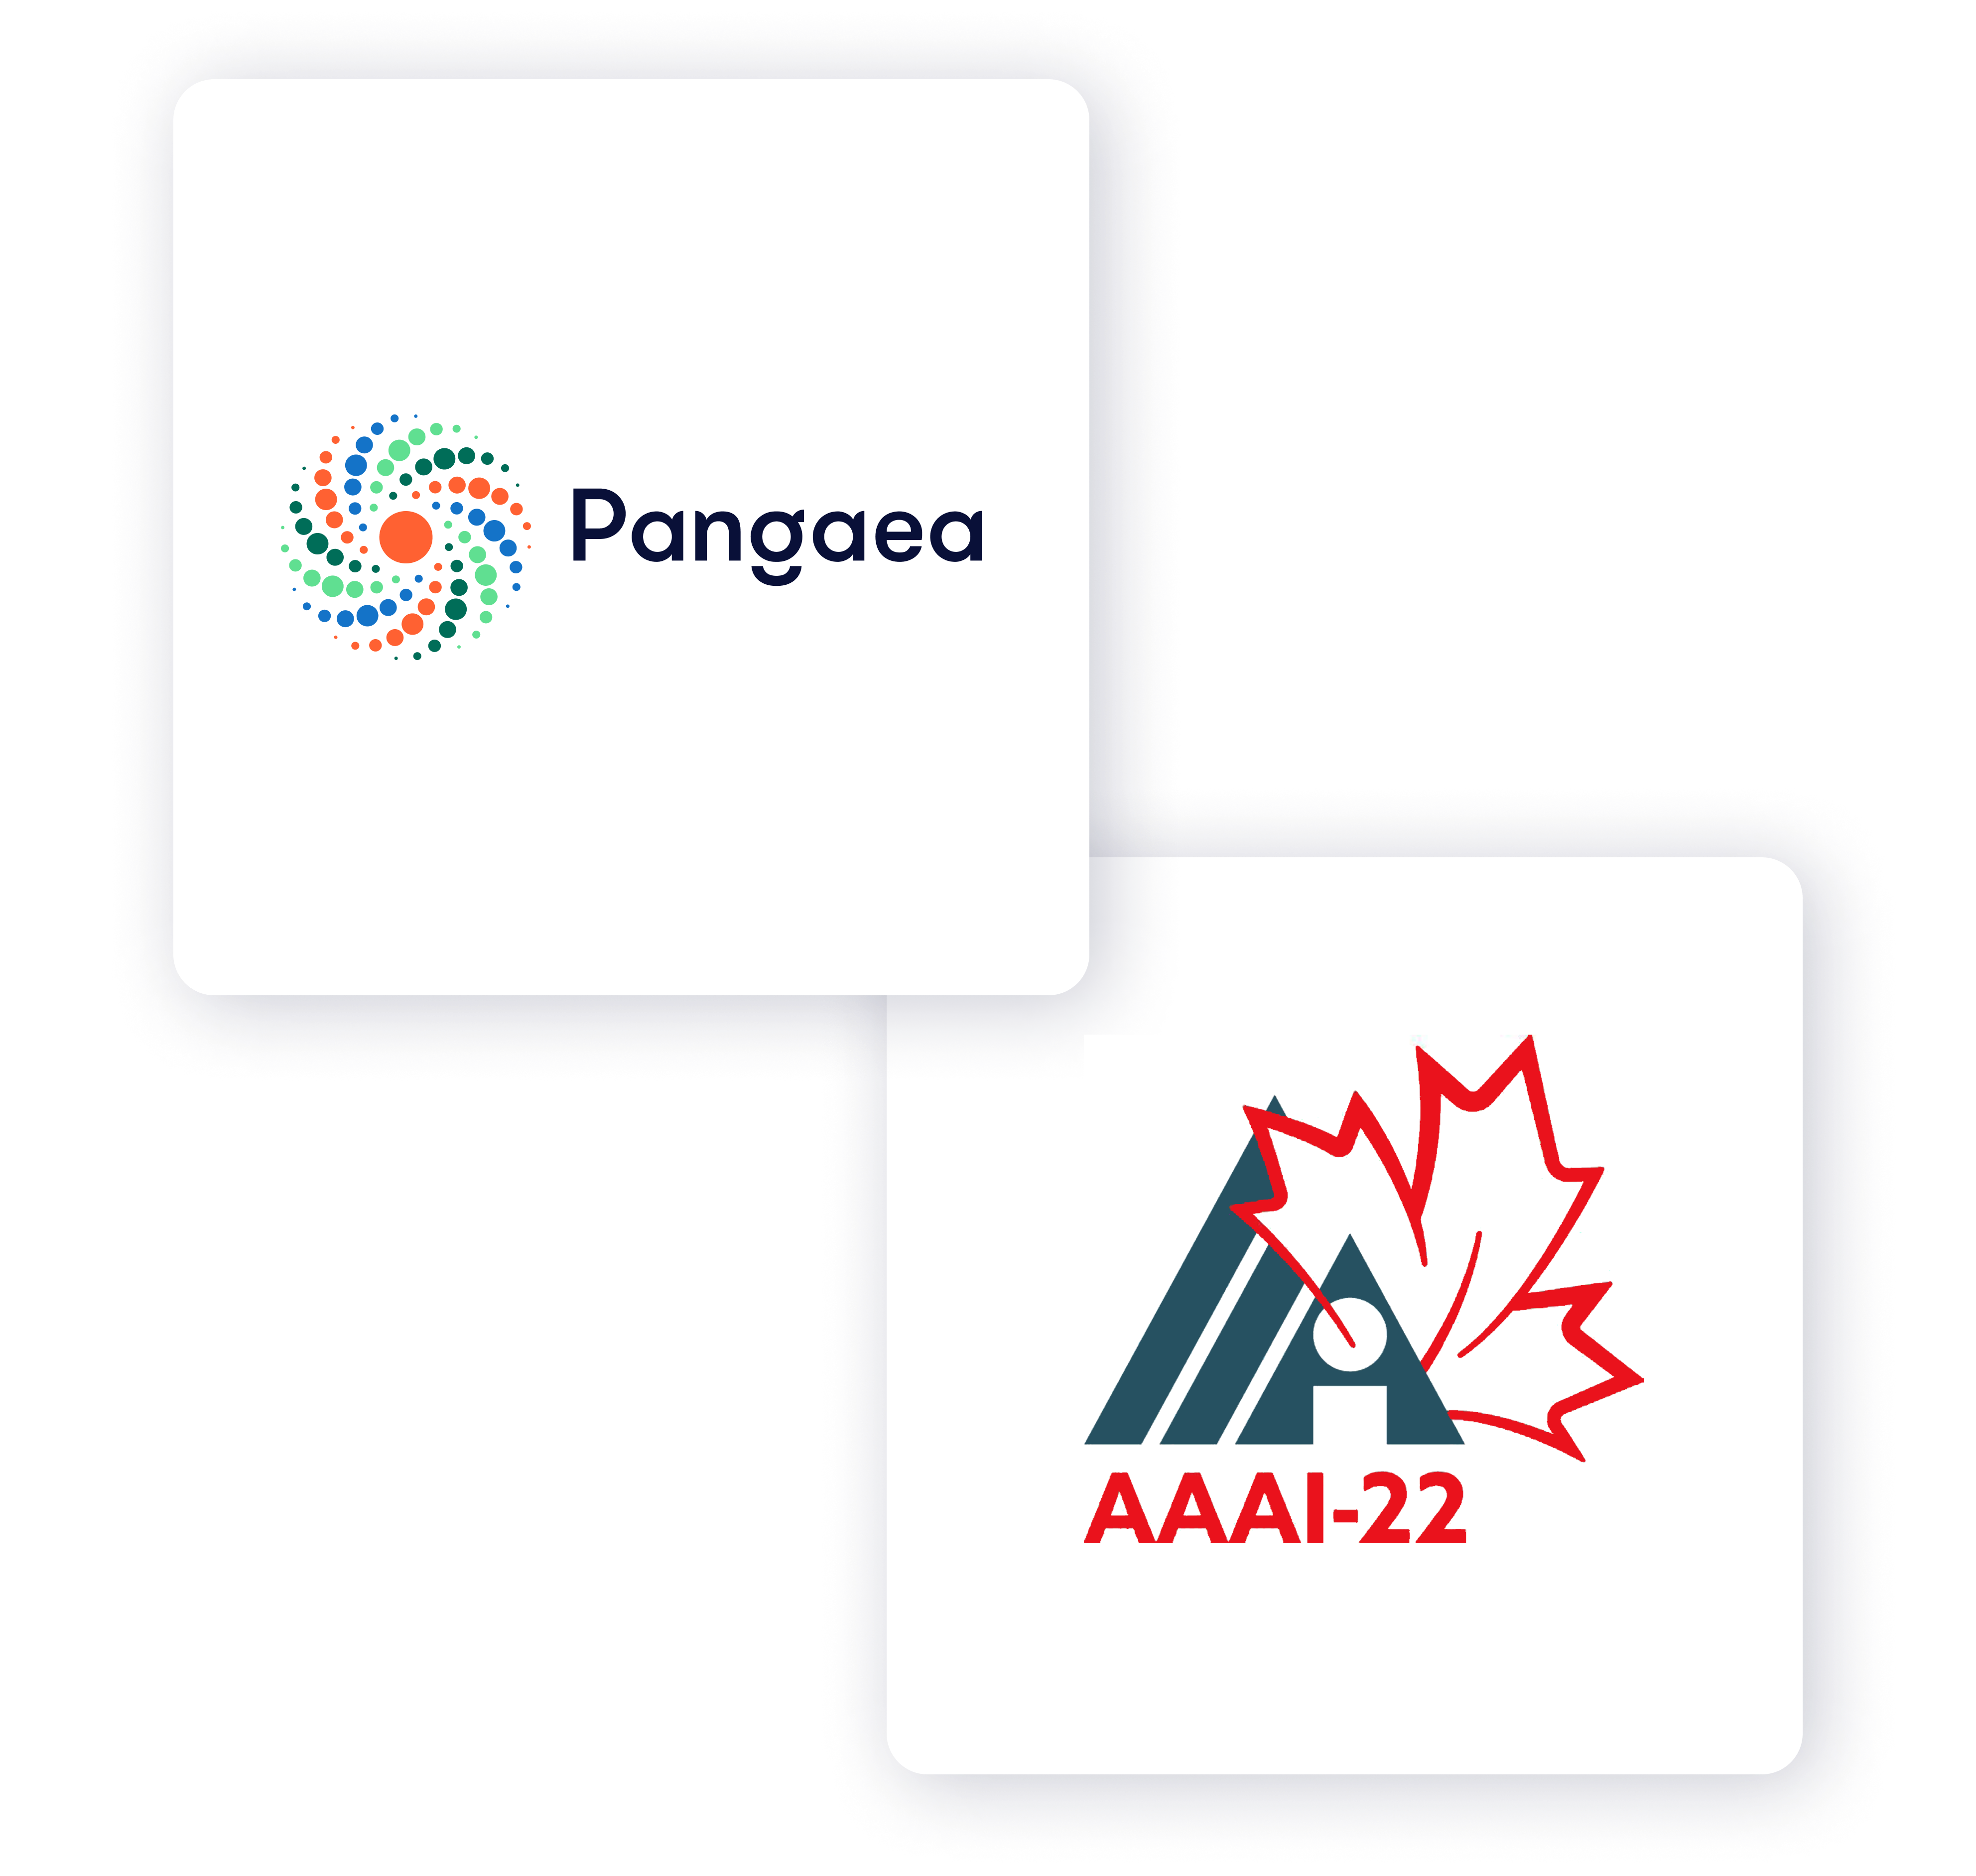 T Pangaea-AAAI-22-Logos